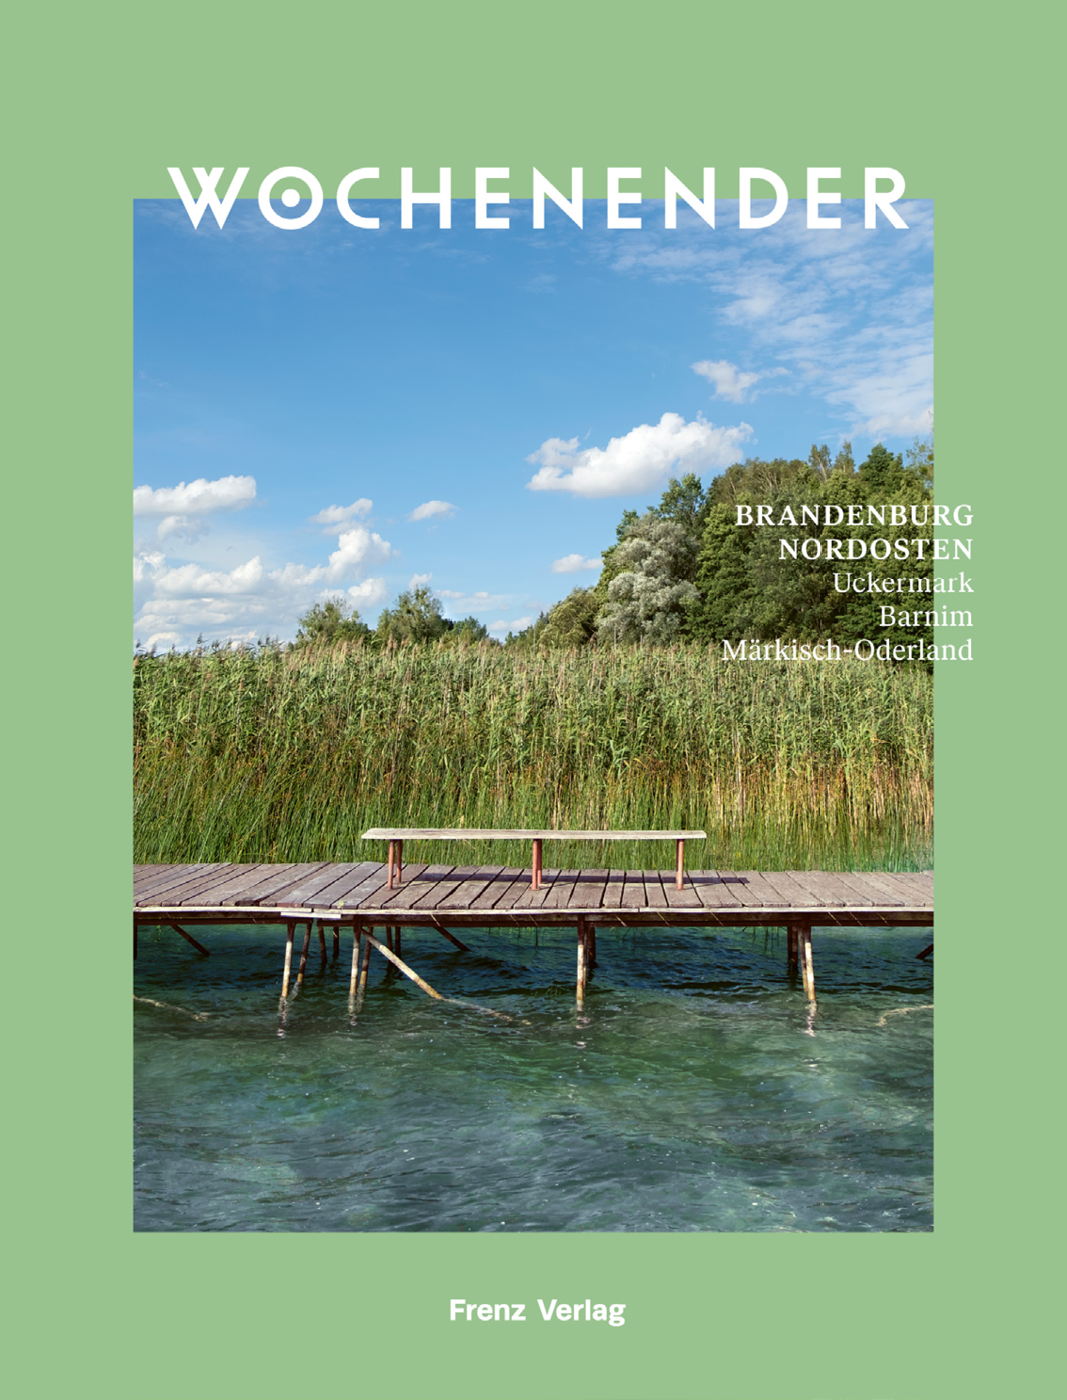 WOCHENENDER – BRANDENBURG NORDOSTEN